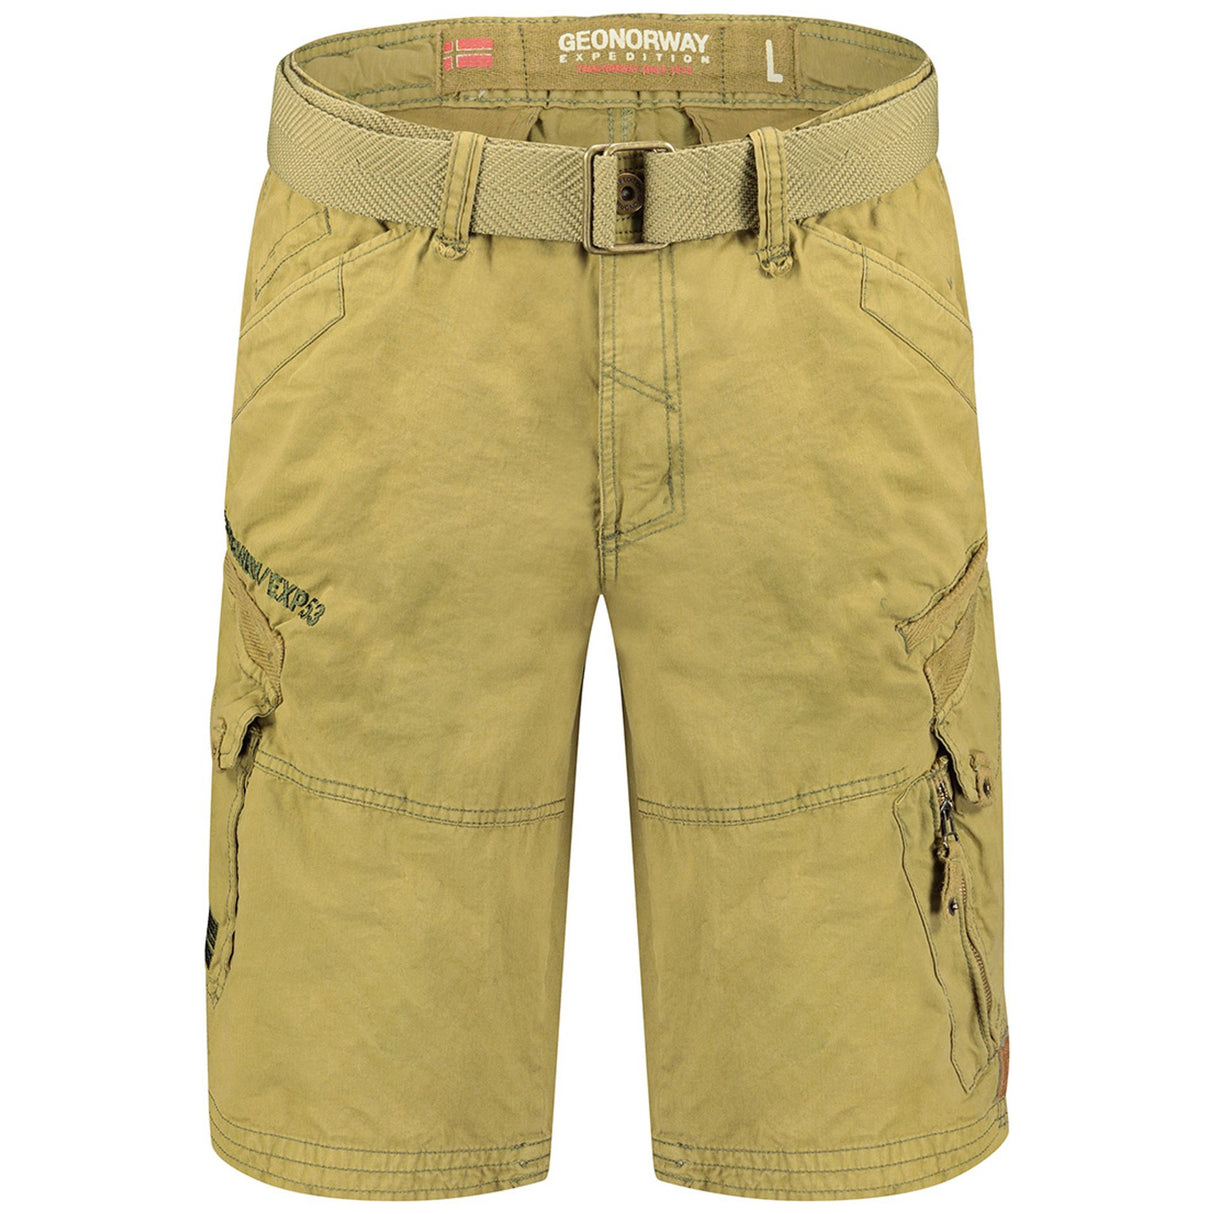 Men's Spring/Summer shorts Zip-fly shorts 7-pocket shorts (or multi-pocket shorts) Solid color shorts Cotton shorts Wash at 30° C